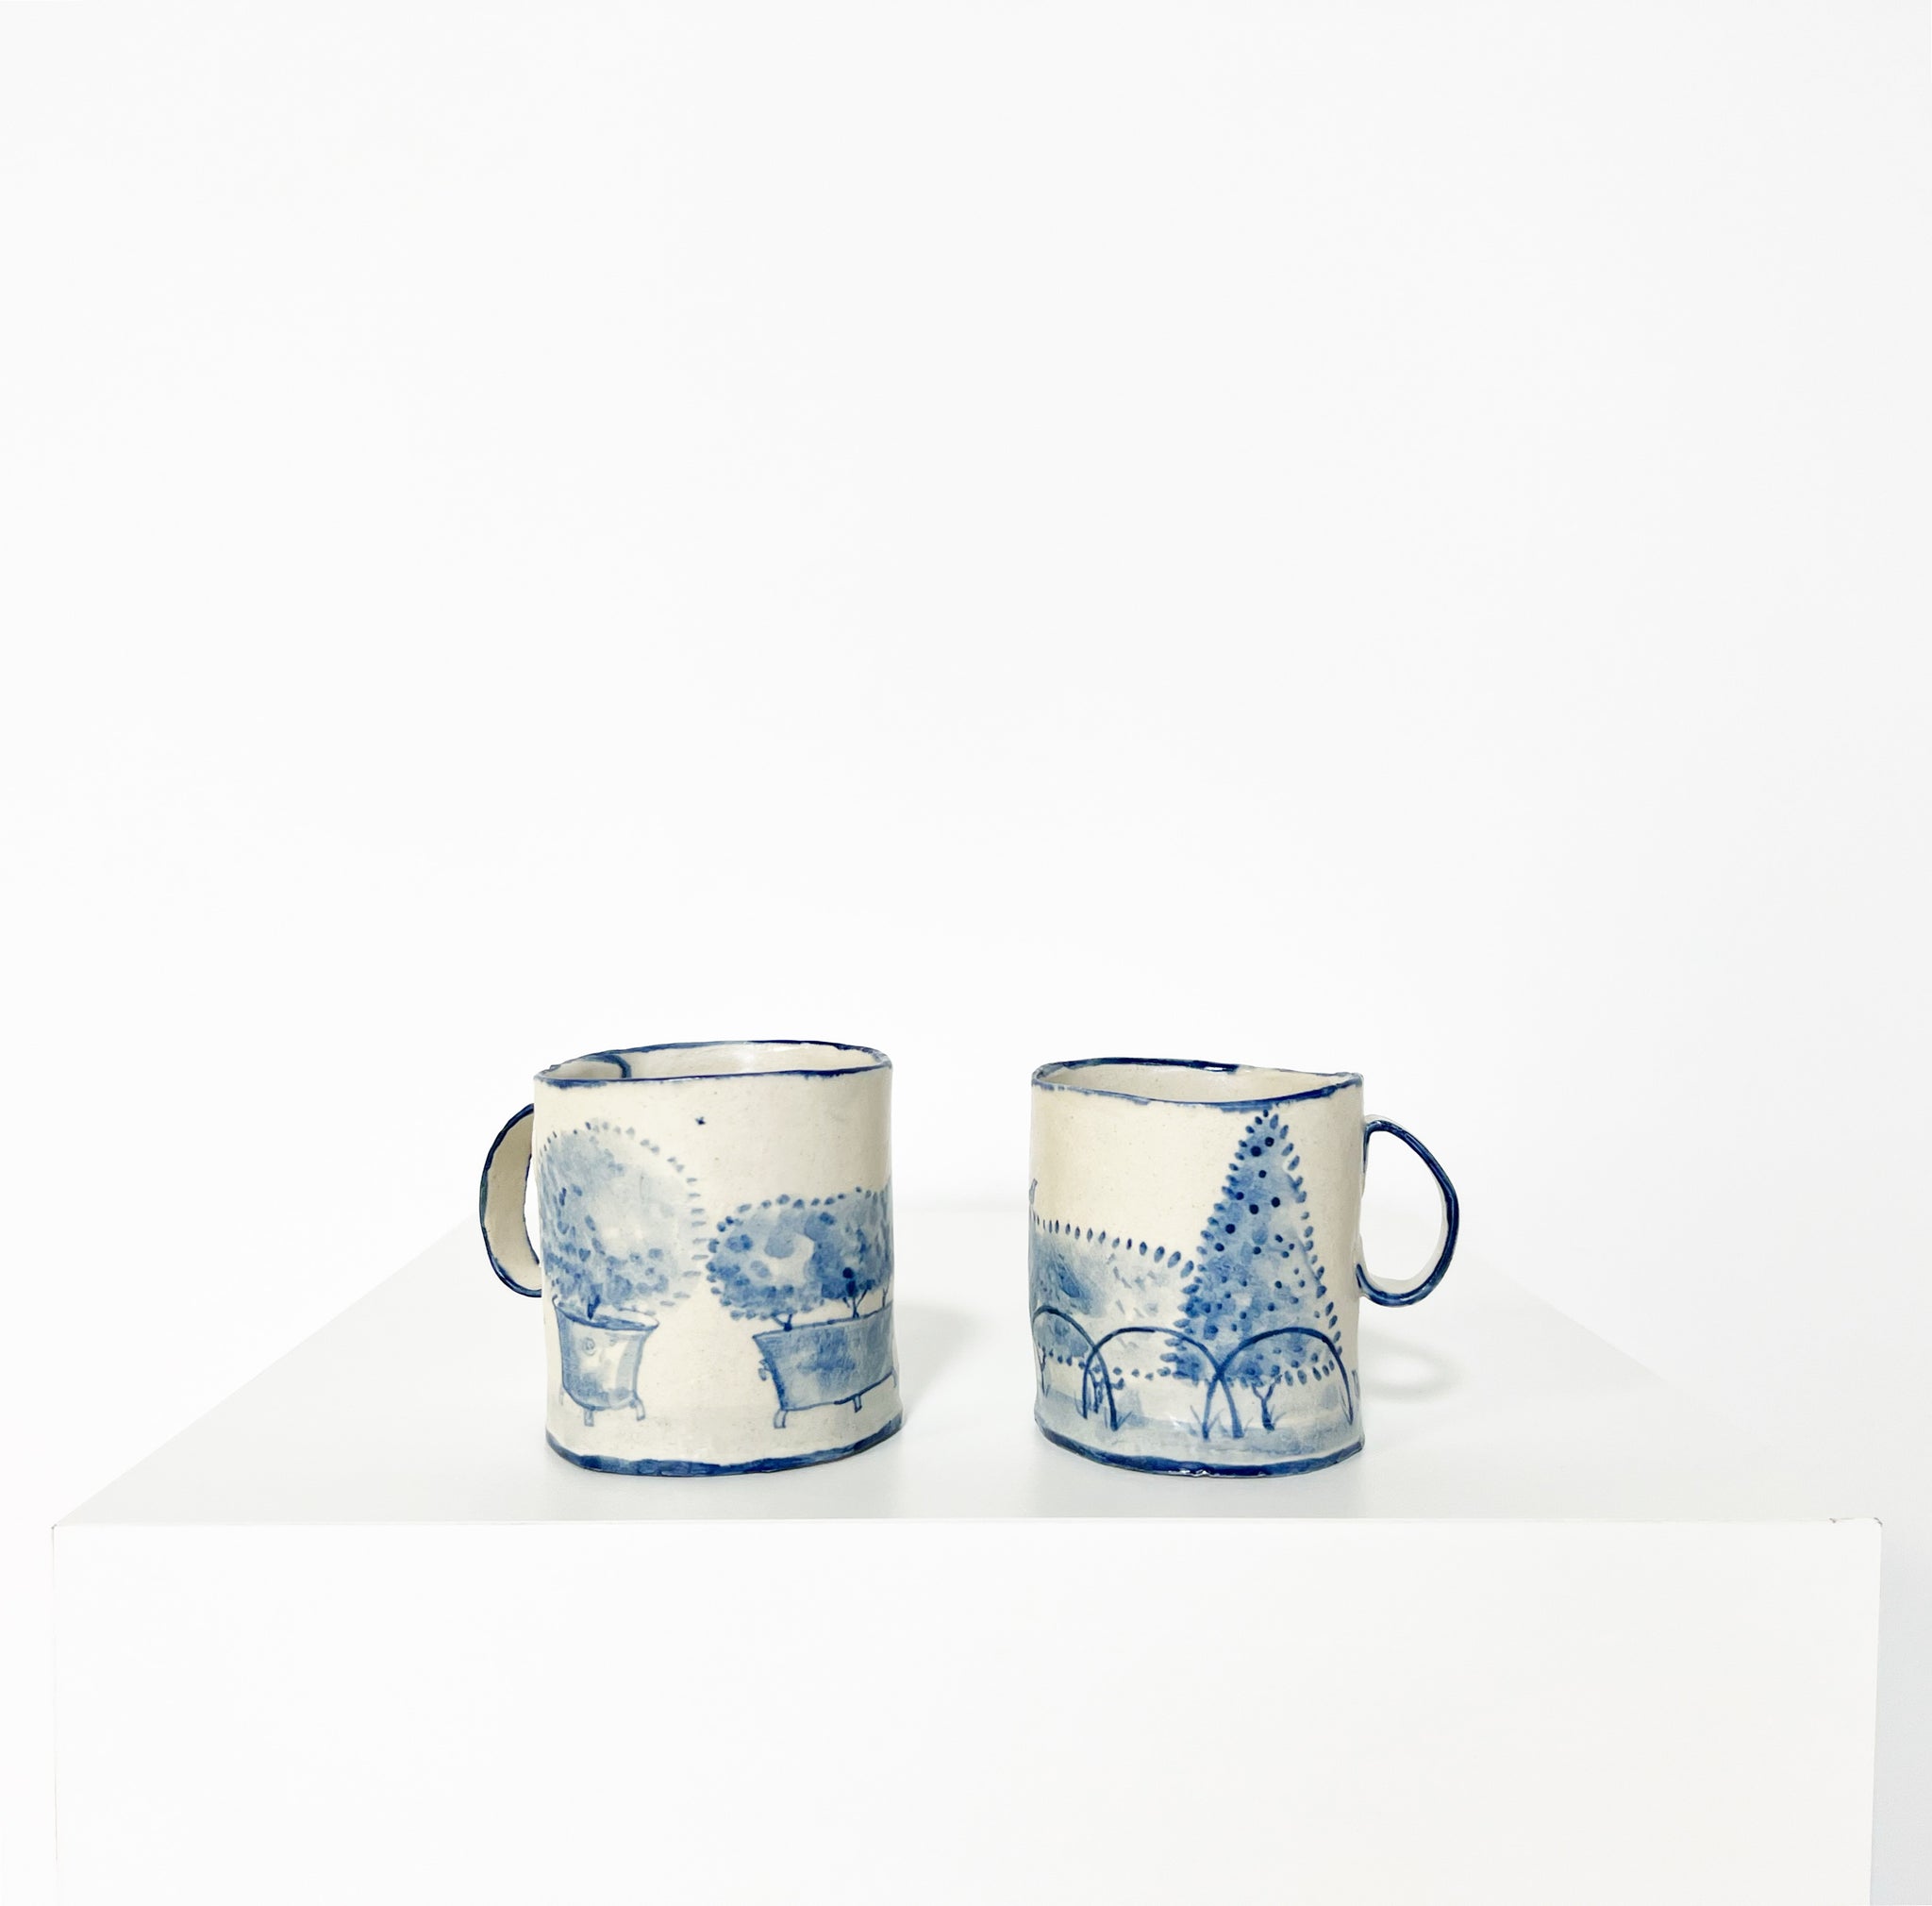 Pair of Mugs